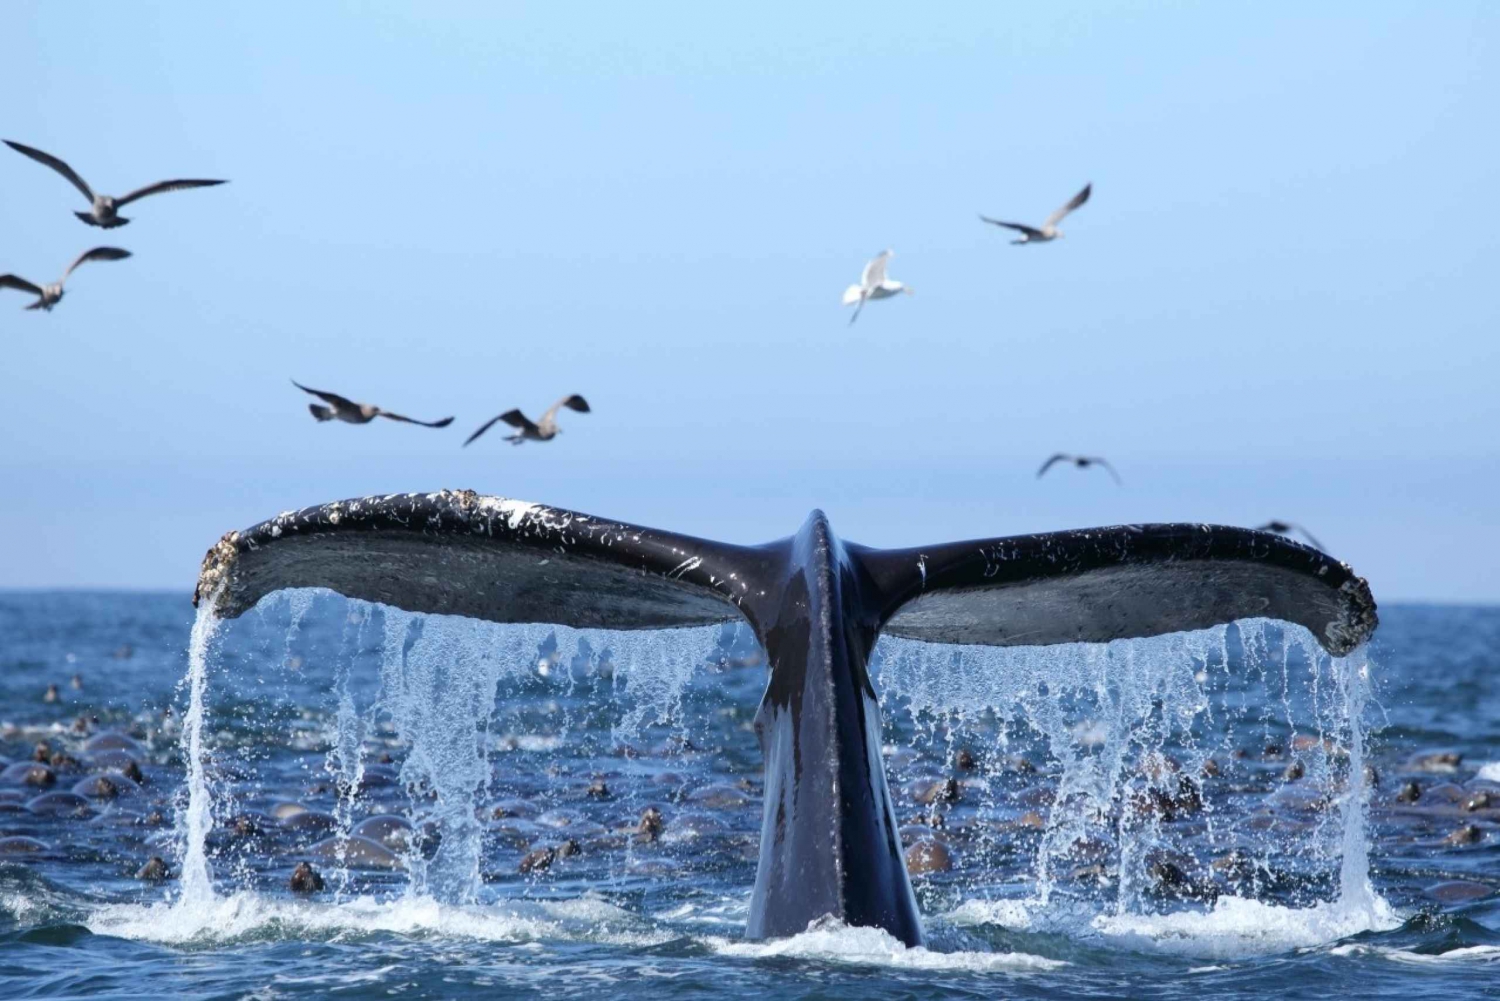 Oahu : Croisière observation des baleines à Honolulu